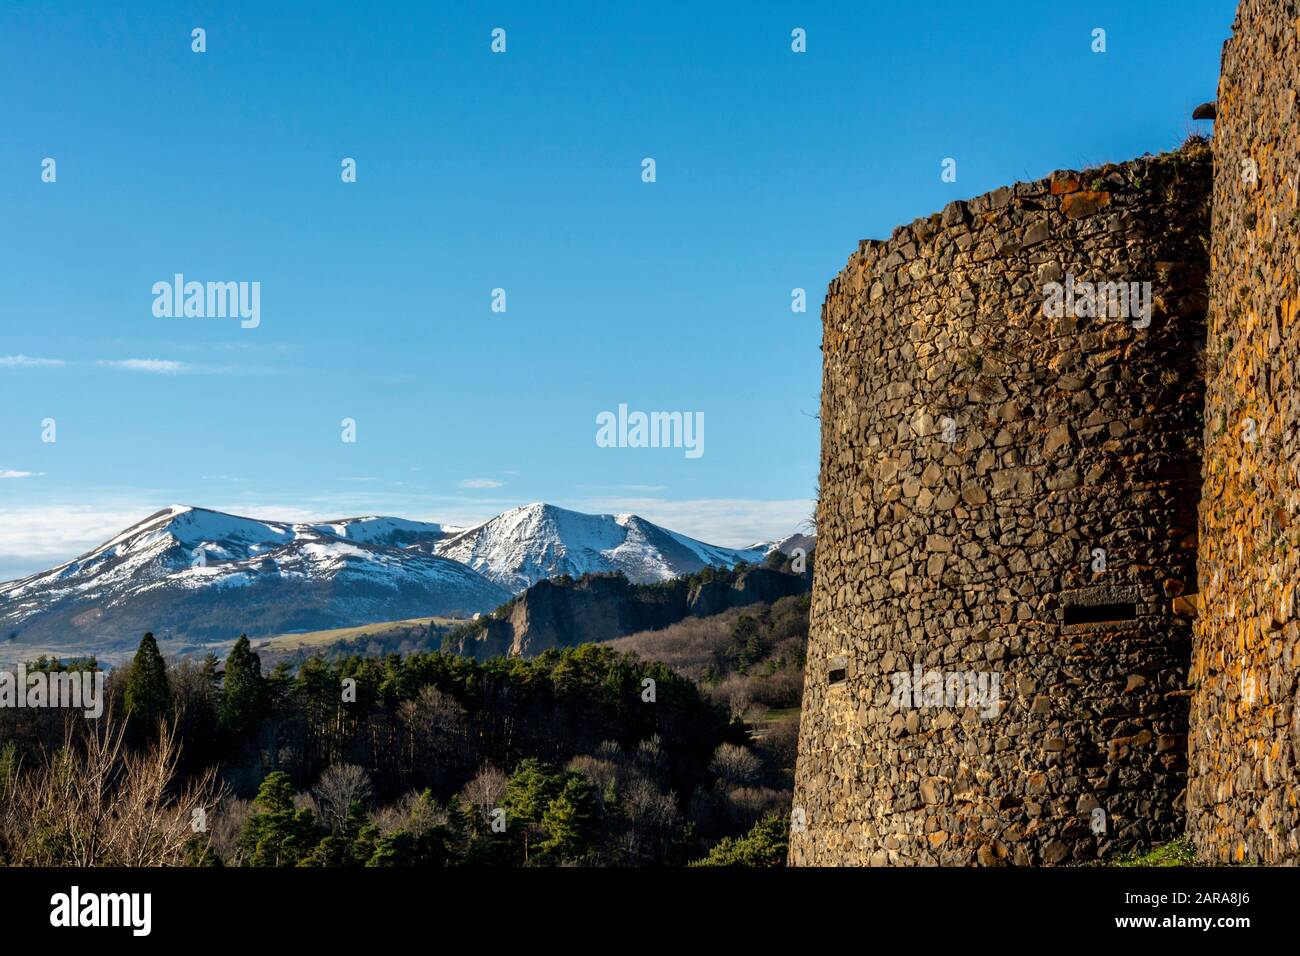 Vue sur le massif de Sancy depuis le château de Murol, le Puy de Dome, le Parc naturel Régional des volcans d'Auvergne, Auvergne-Rhône-Alpes, France Banque D'Images